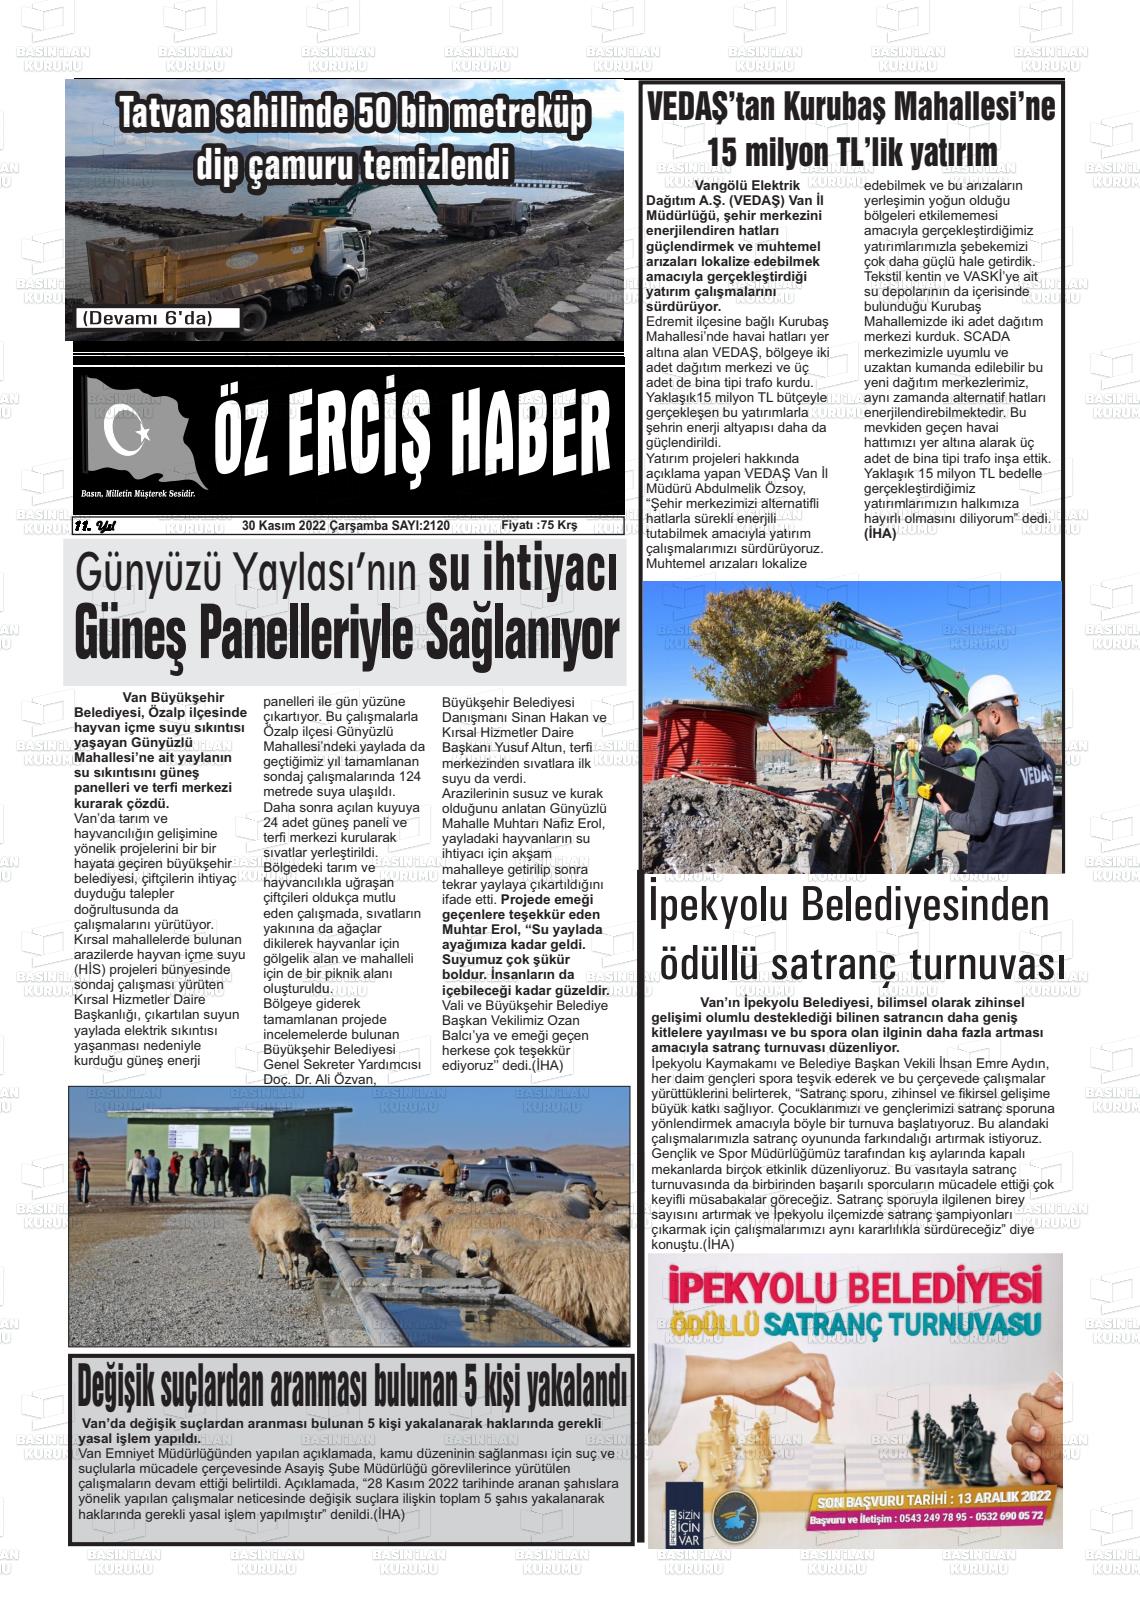 30 Kasım 2022 Öz Erciş Haber Gazete Manşeti